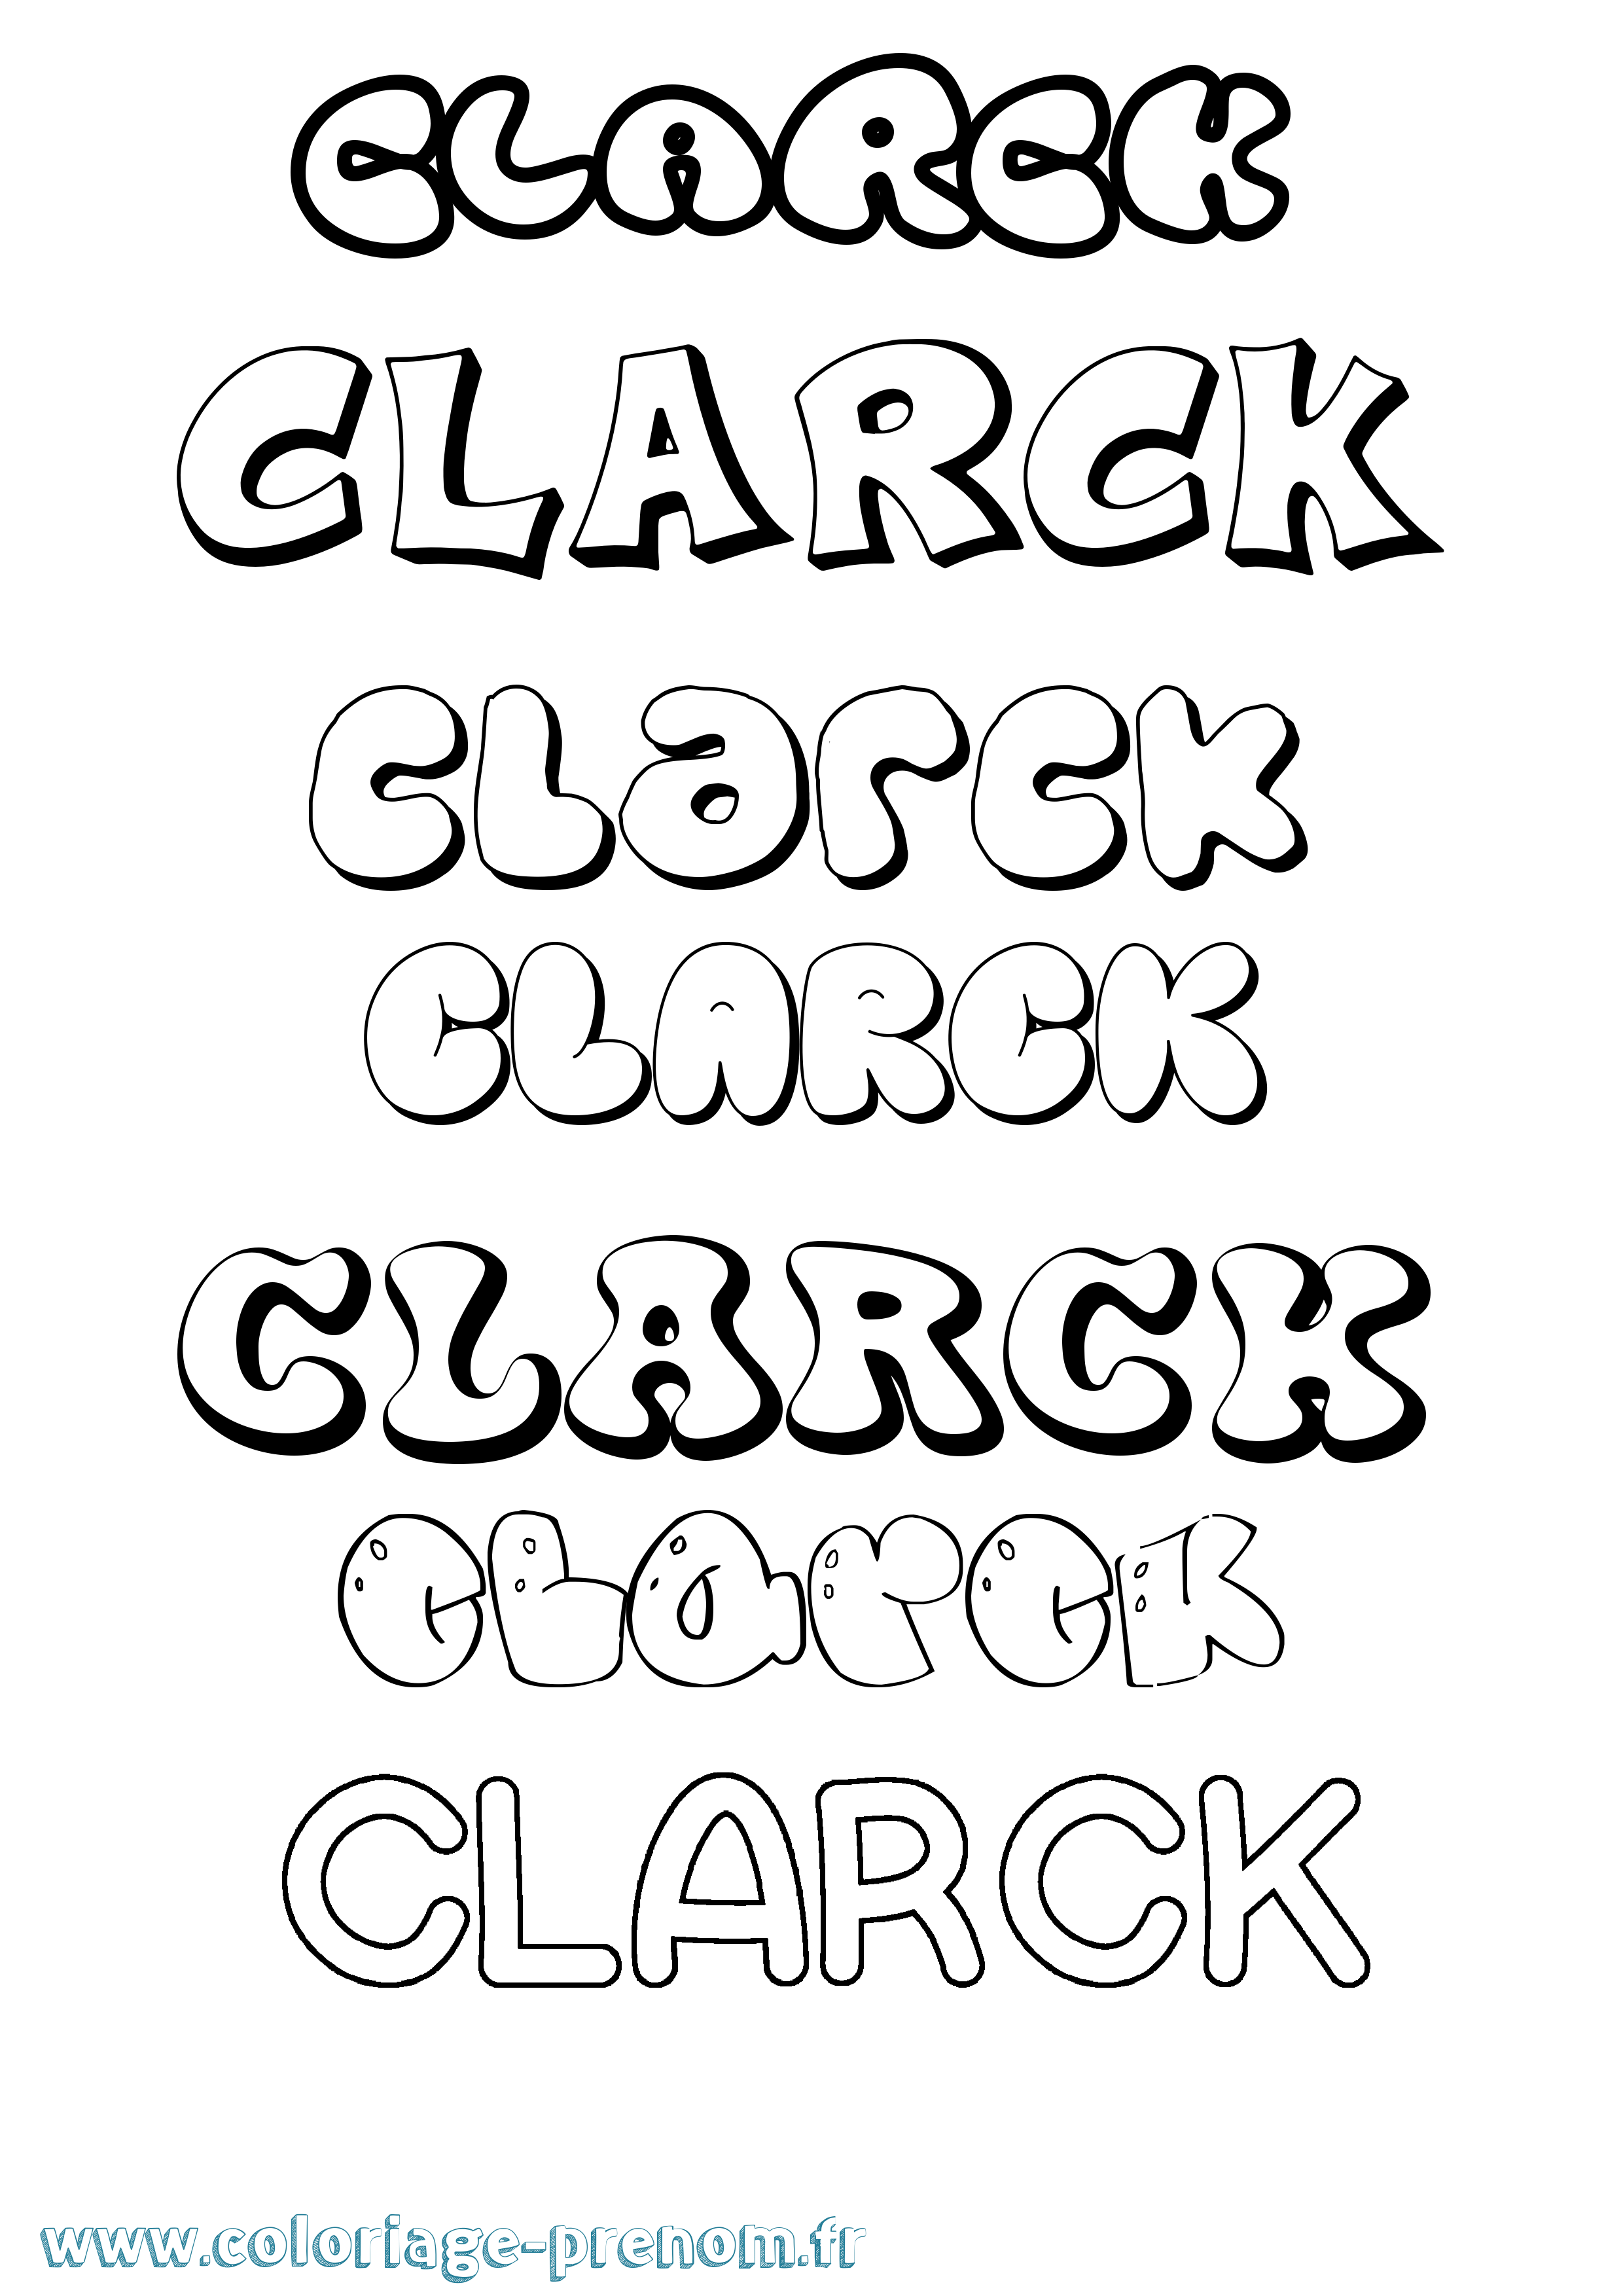 Coloriage prénom Clarck Bubble